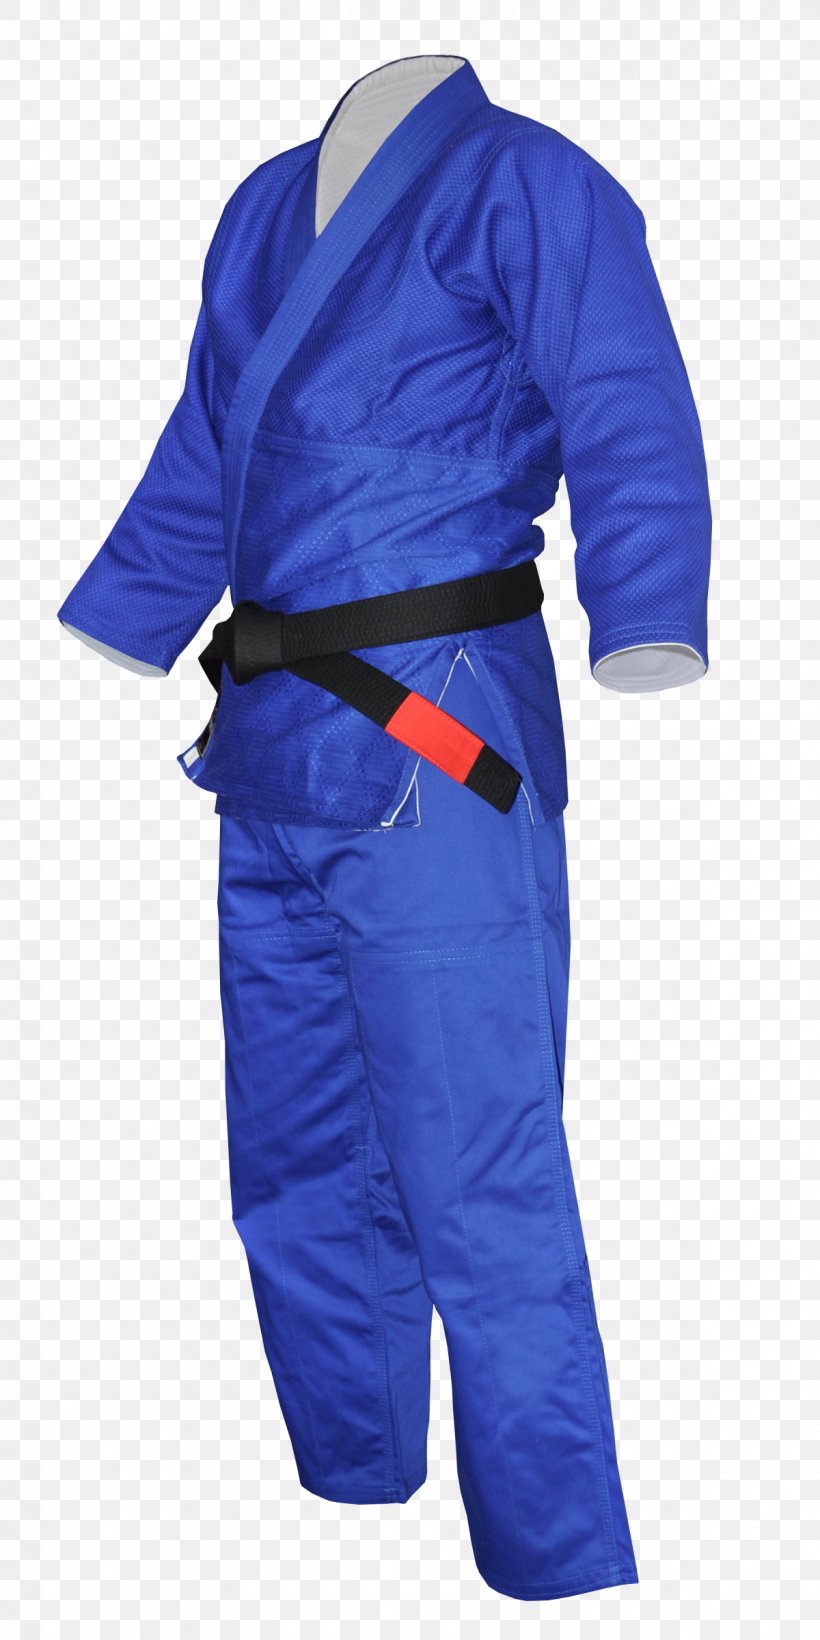 Uniform Judogi Karate Gi Clothing, PNG, 1200x2400px, Uniform, Blue, Brazilian Jiujitsu, Clothing, Cobalt Blue Download Free